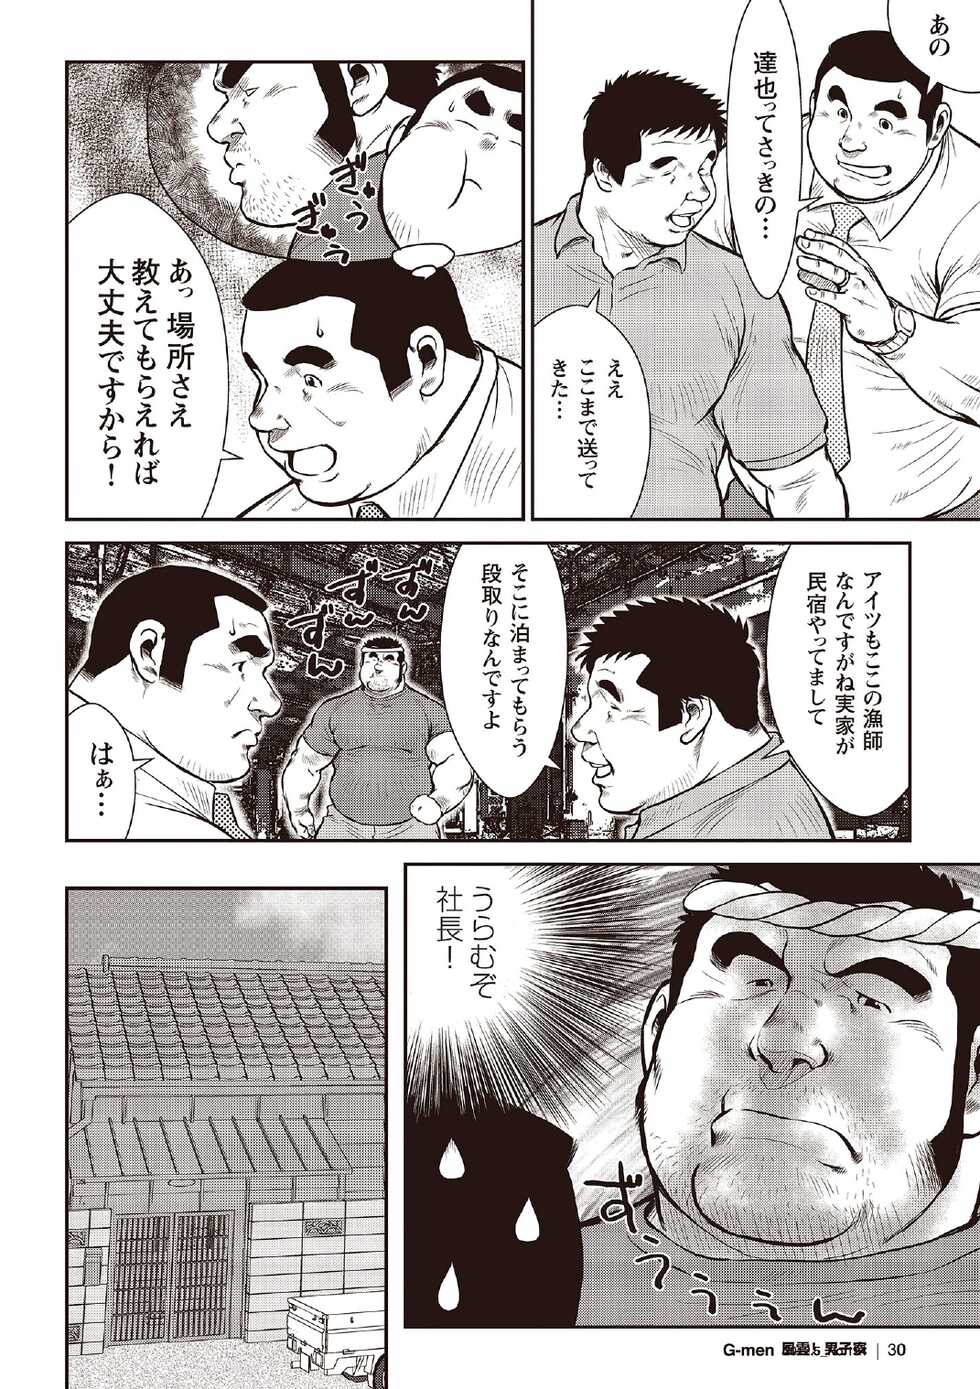 [Ebisubashi Seizou] Ebisubashi Seizou Tanpen Manga Shuu 2 Fuuun! Danshi Ryou [Bunsatsuban] PART 2 Bousou Hantou Taifuu Zensen Ch. 1 + Ch. 2 [Digital] - Page 8